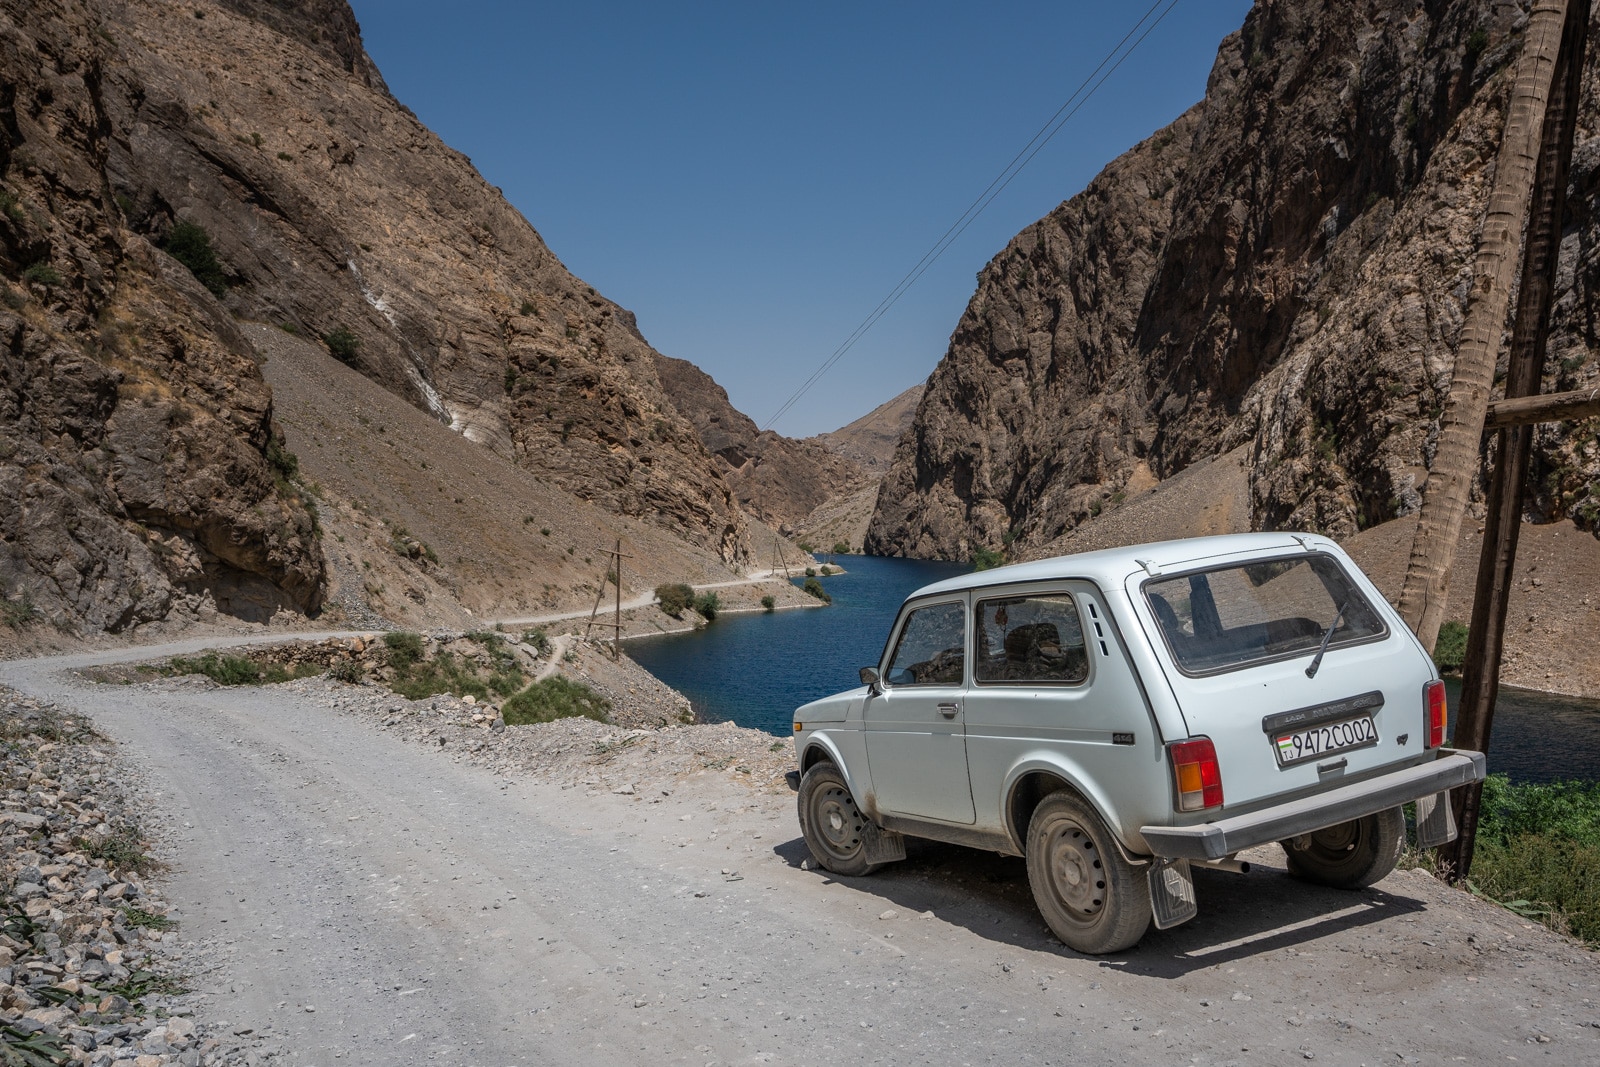 Car by the Haft Kul in Tajikistan's Fann Mountains